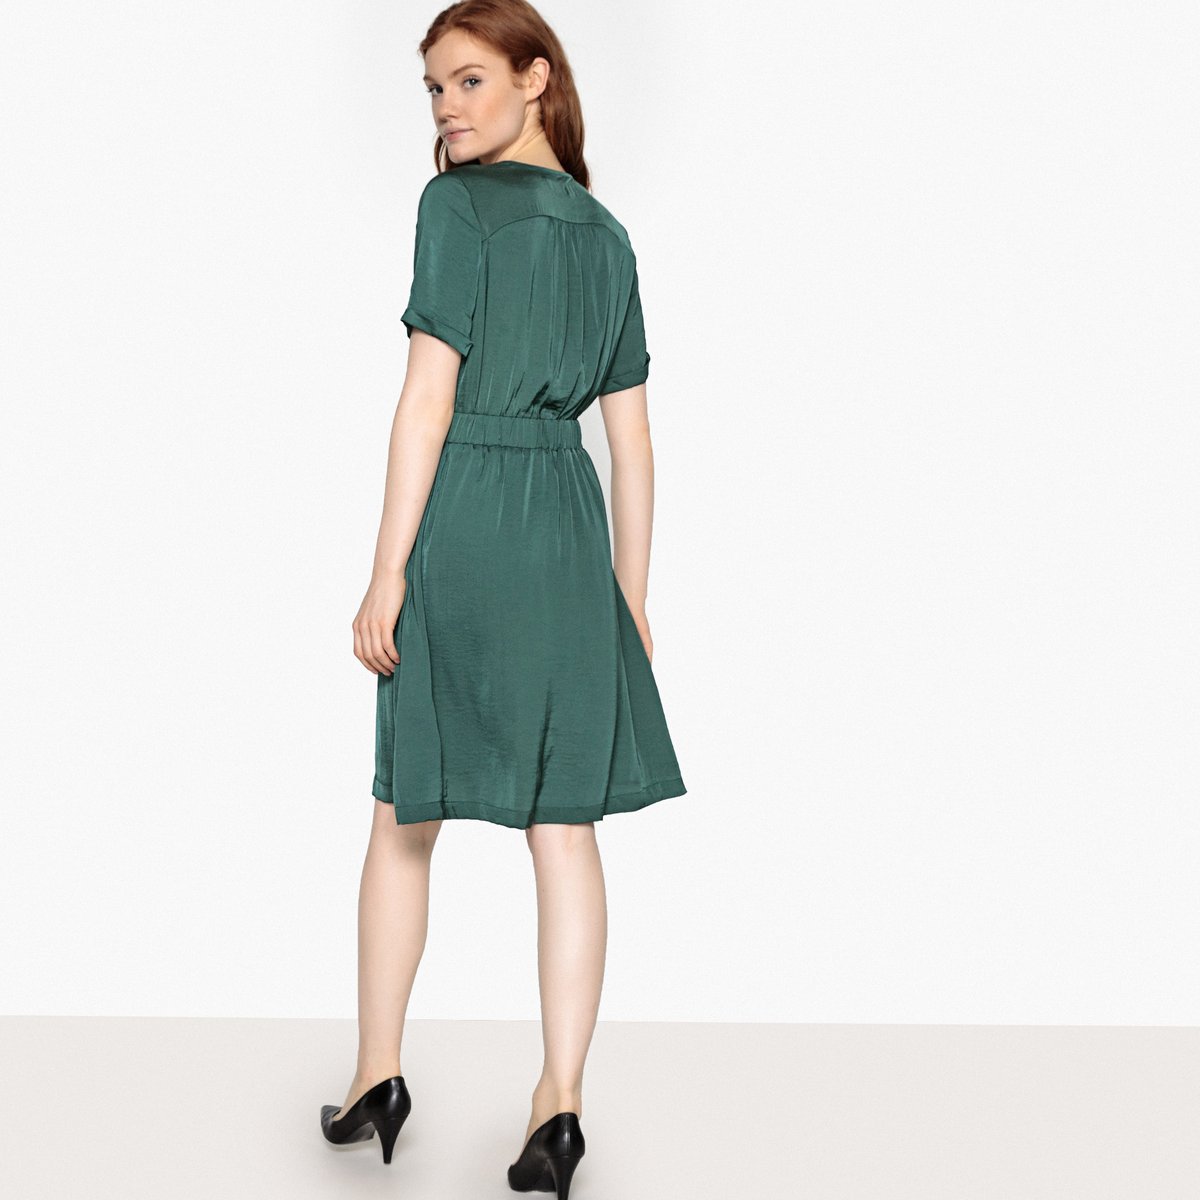 Платье La Redoute С запахом блестящим эффектом и эластичным поясом 38 (FR) - 44 (RUS) зеленый, размер 38 (FR) - 44 (RUS) С запахом блестящим эффектом и эластичным поясом 38 (FR) - 44 (RUS) зеленый - фото 4